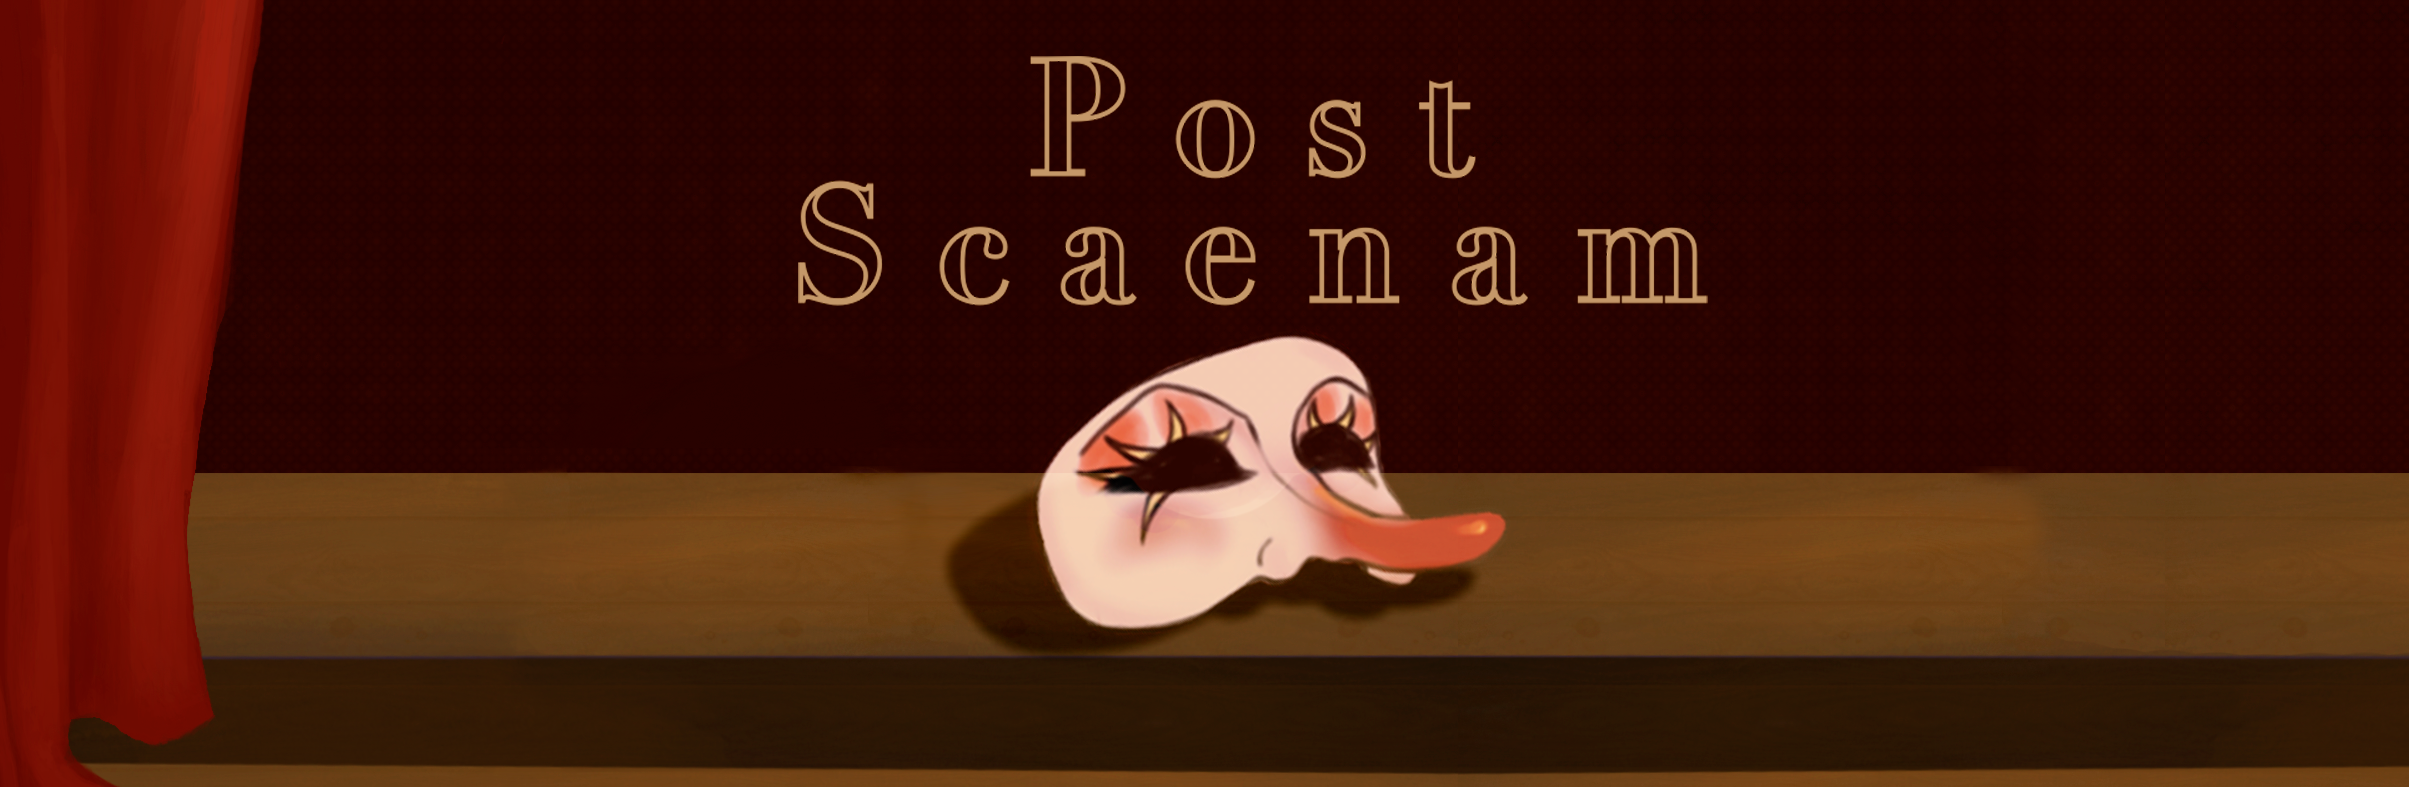 Post Scaenam